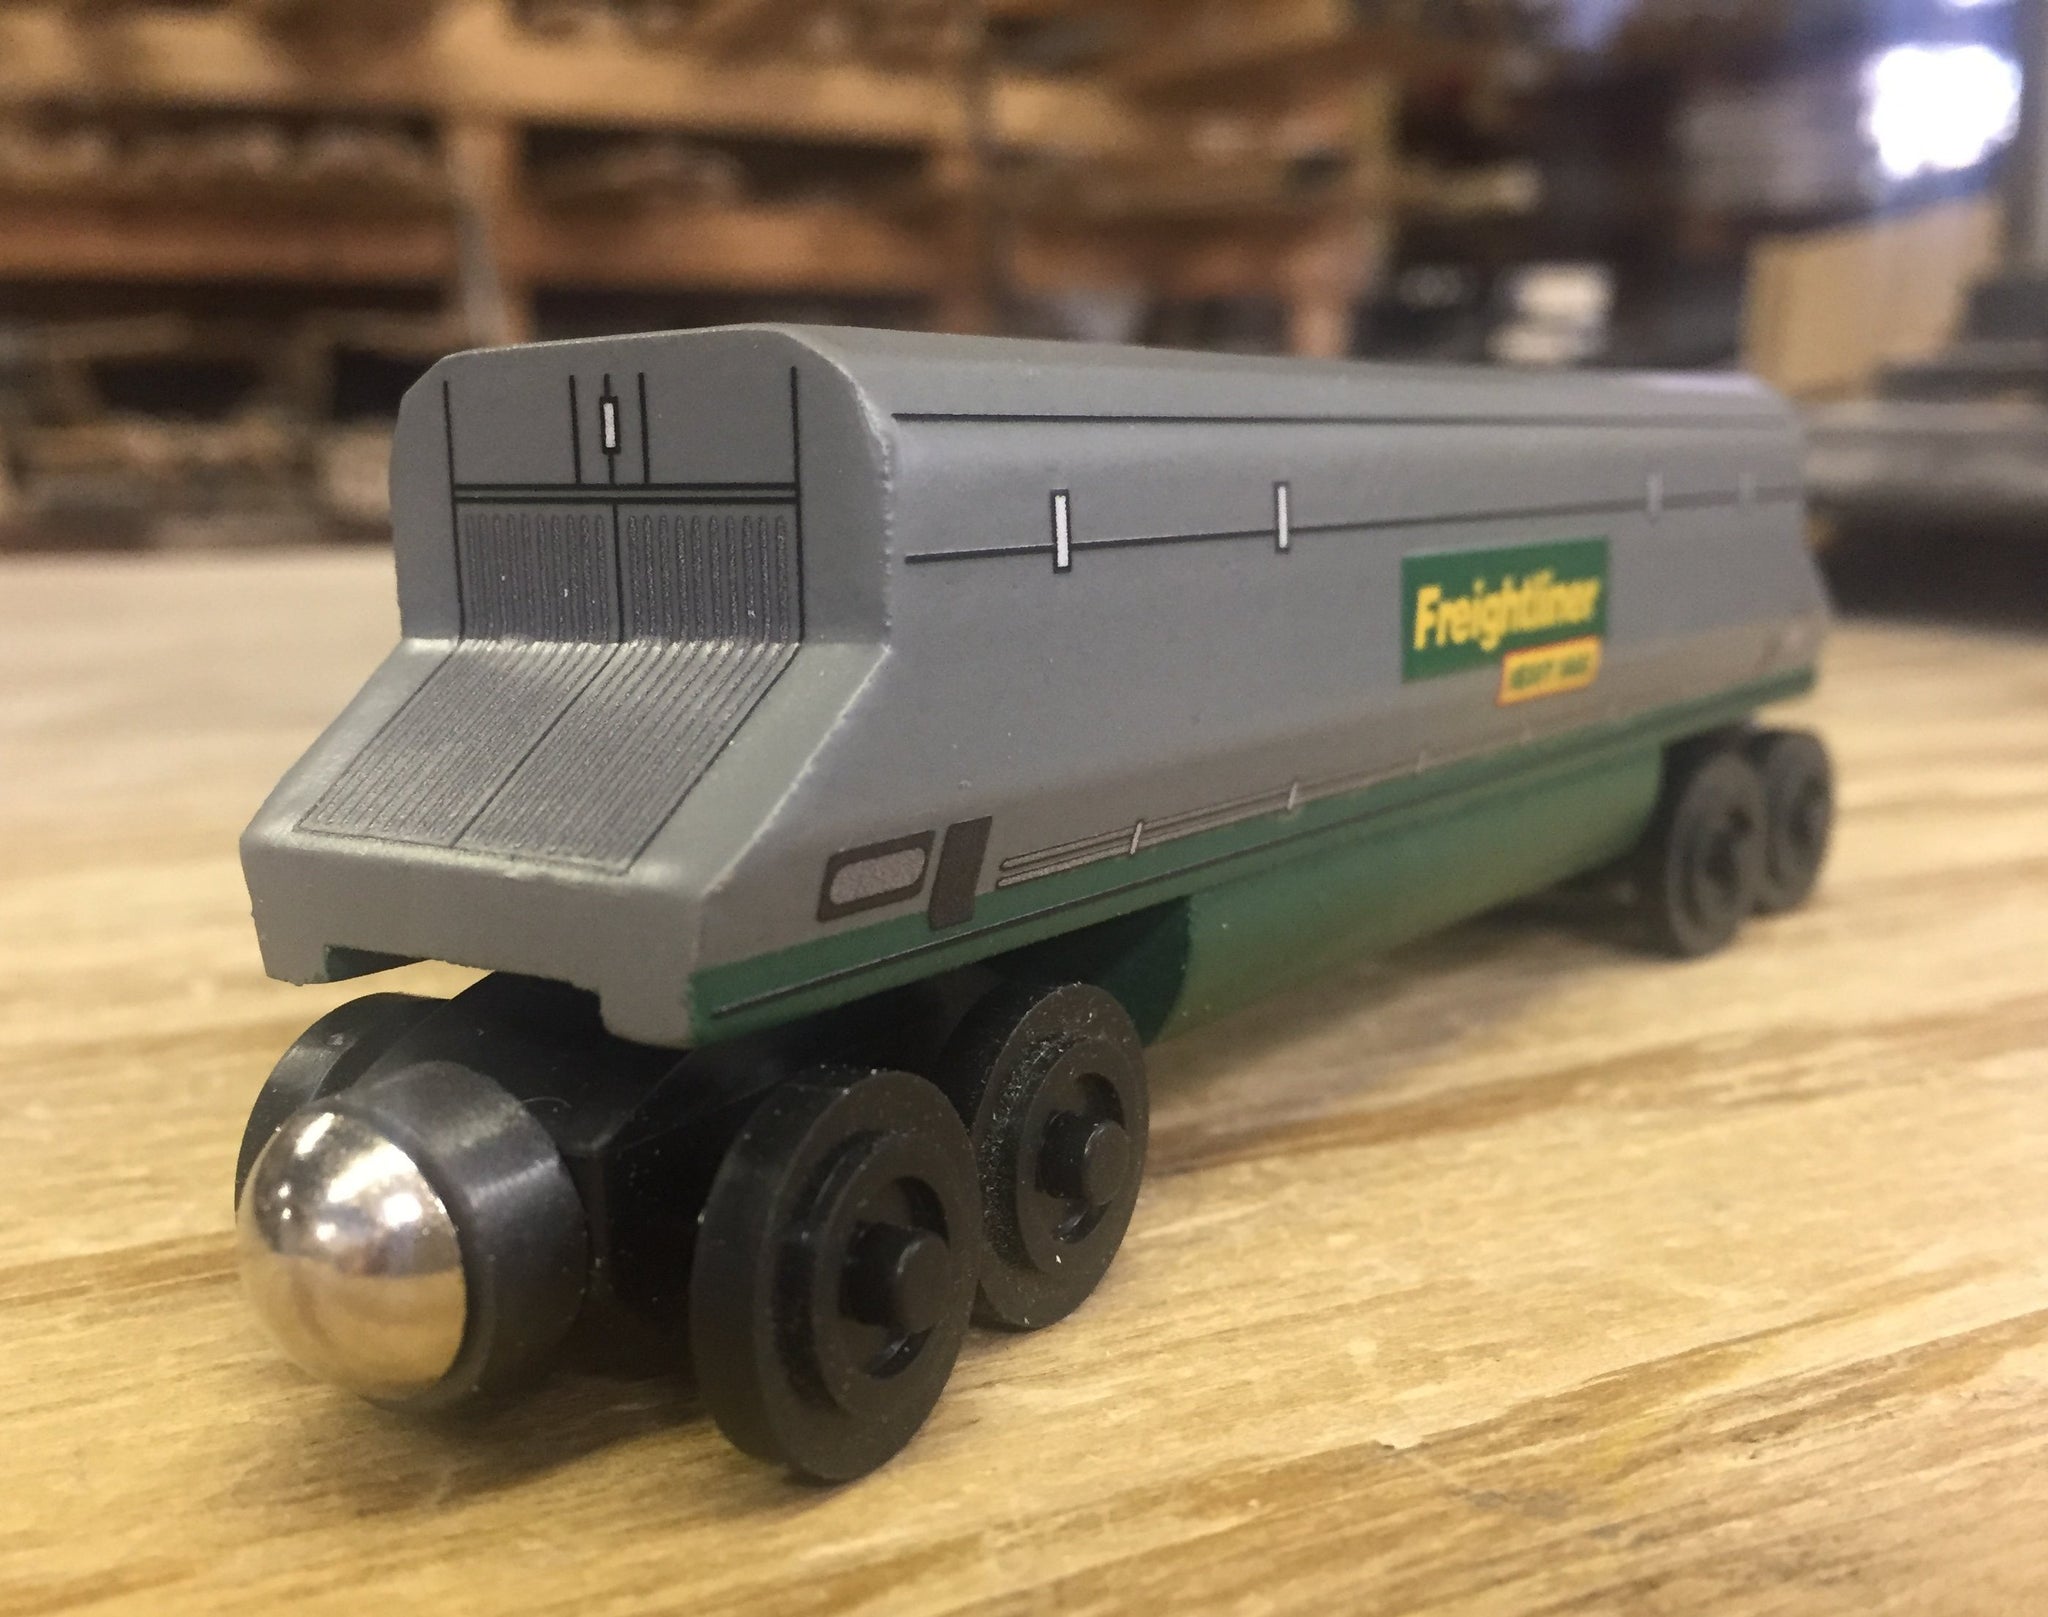 Freightliner toy train 3pc. Set - European